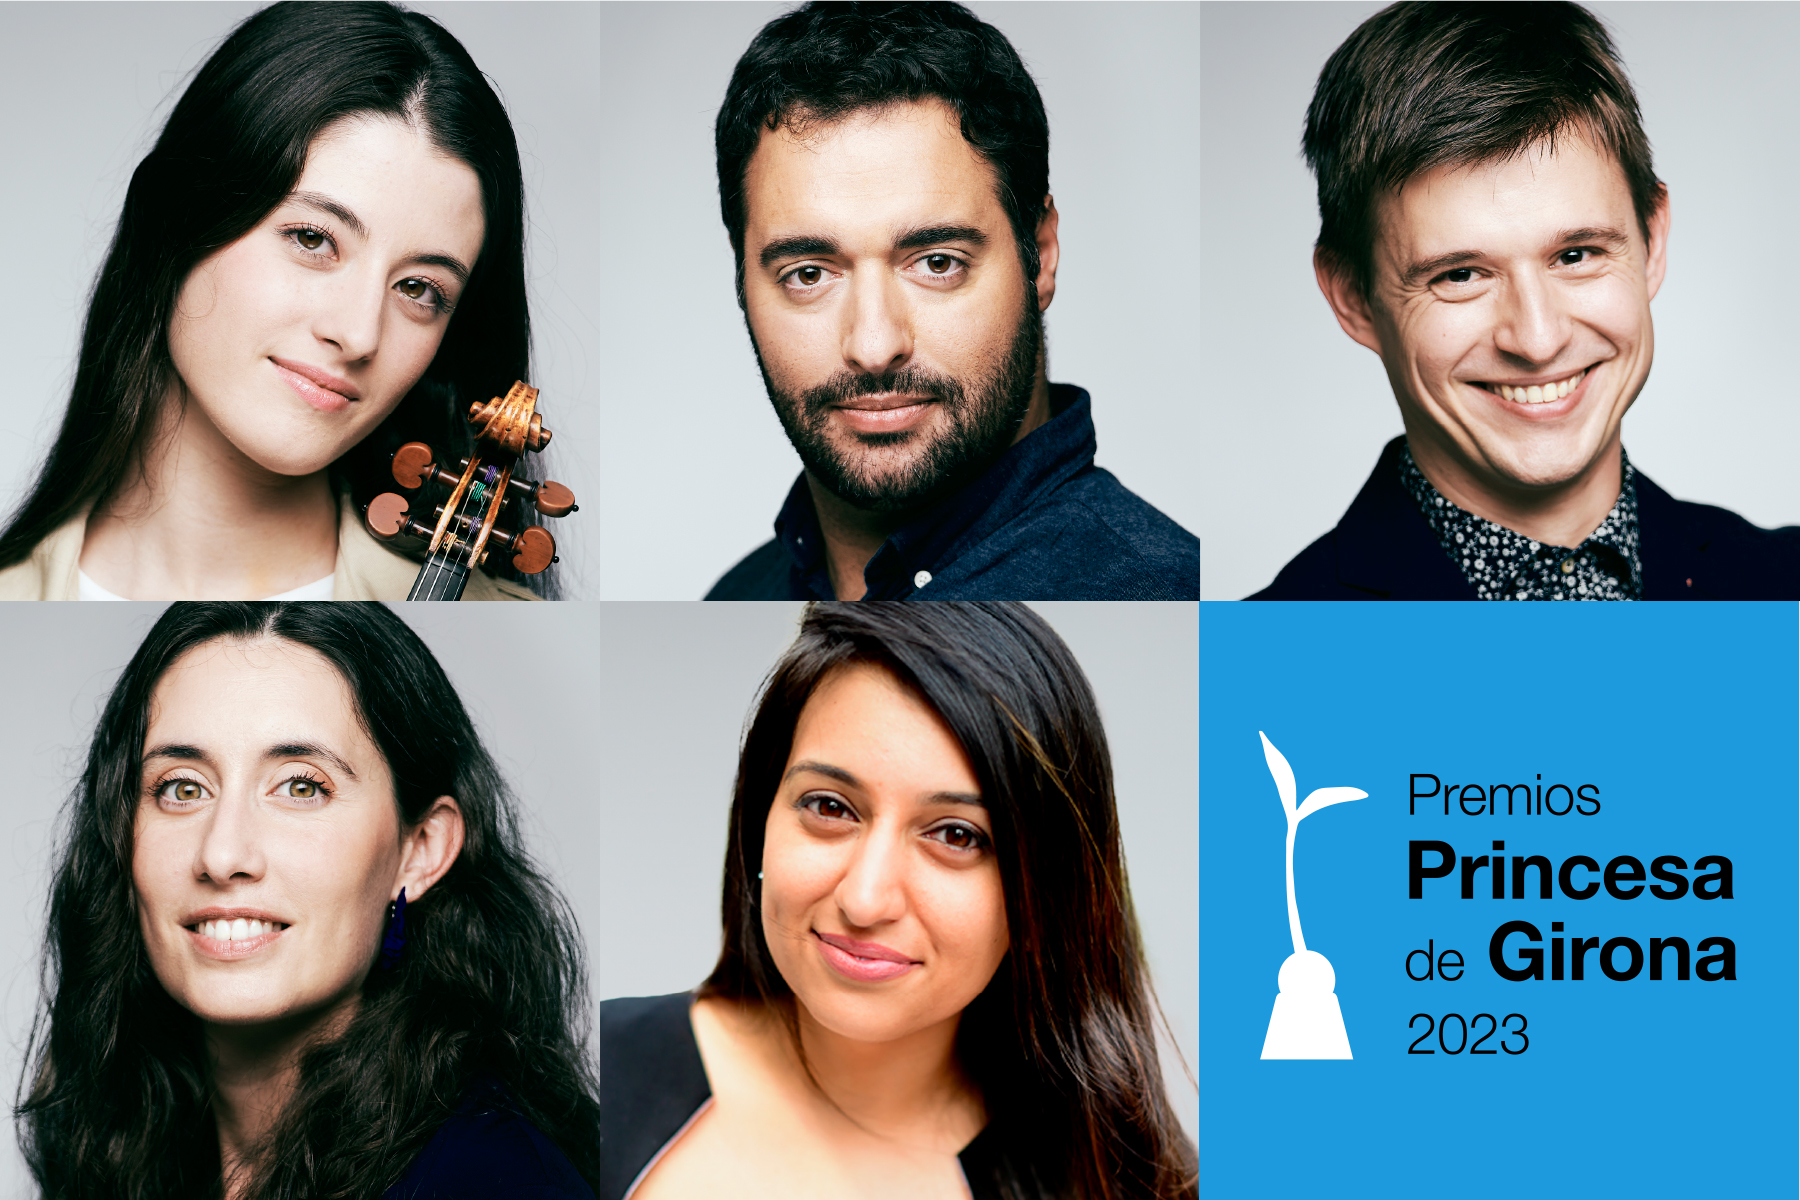 Los Premios Princesa de Girona 2023 se entregarán el 5 de julio en una gala que girará en torno al talento joven y a los grandes retos globales